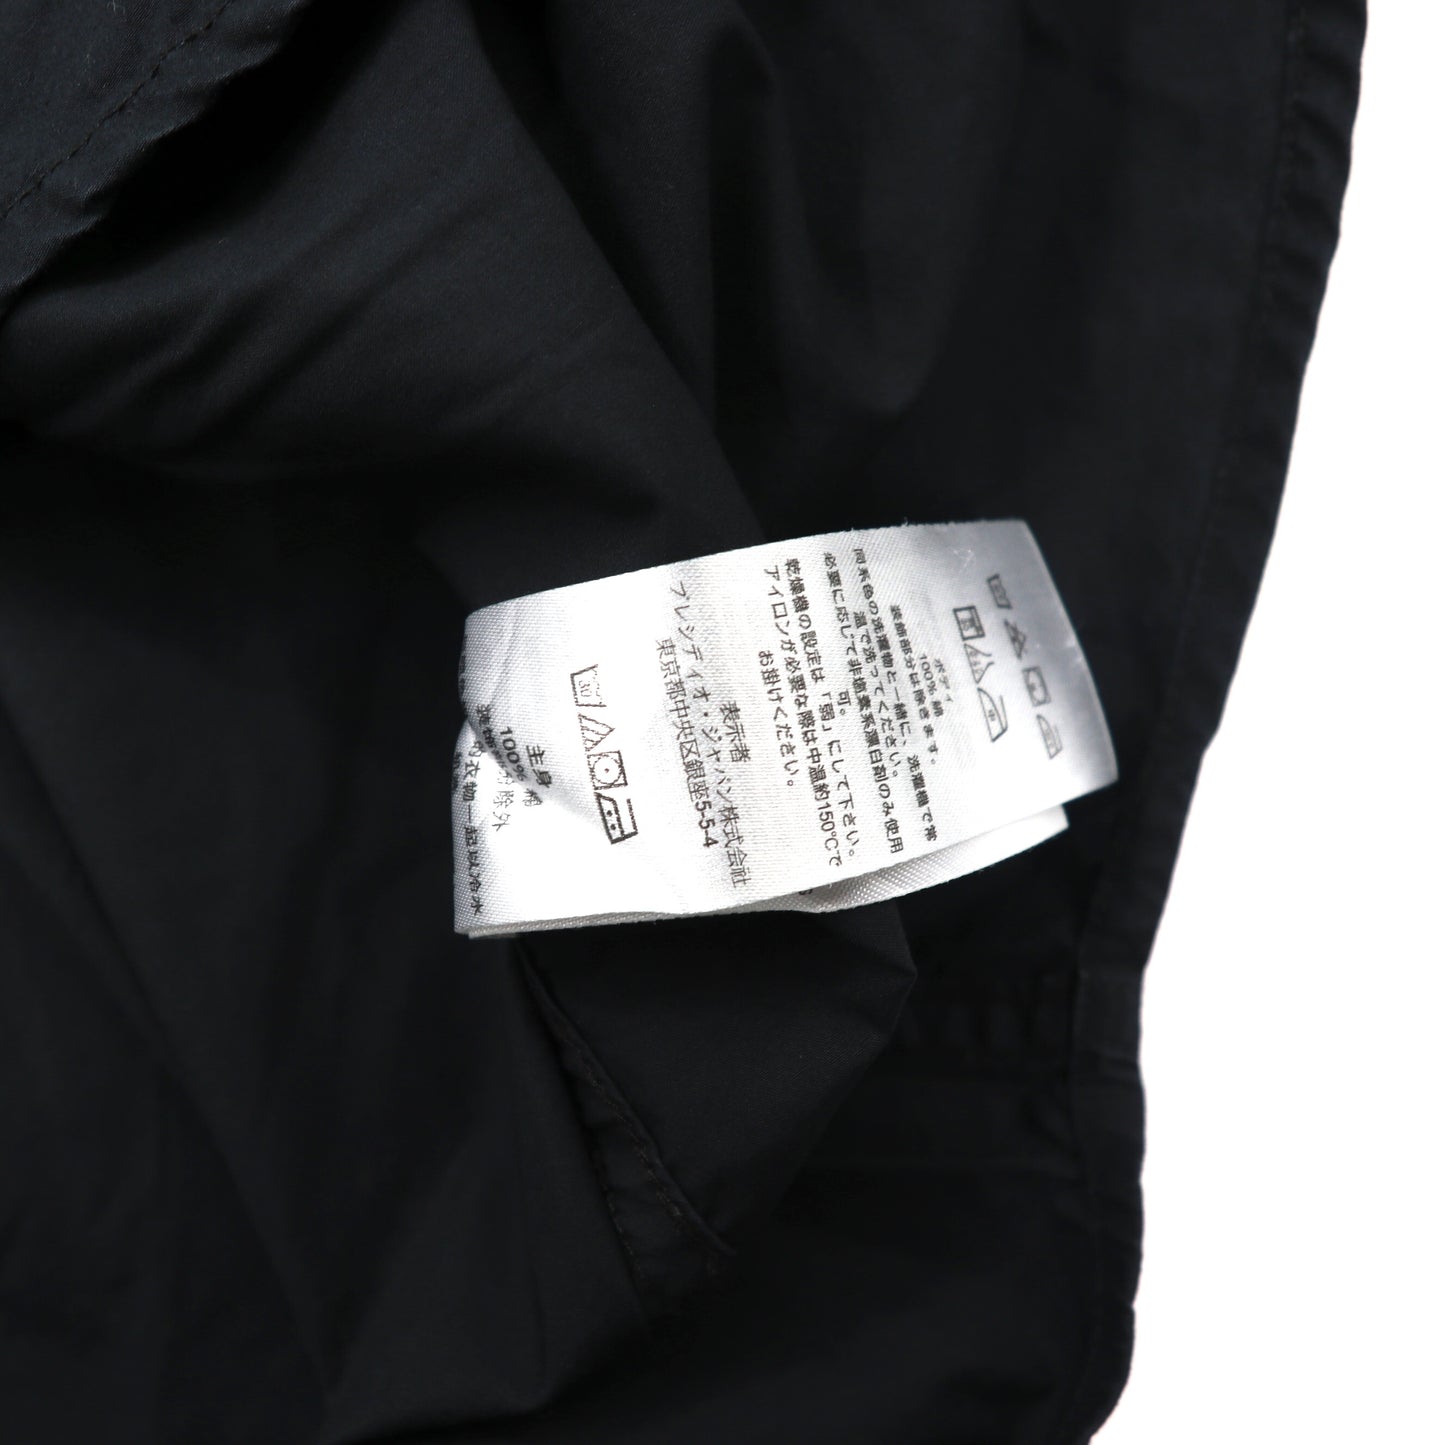 A|X ARMANI EXCHANGE リフレクターラインシャツ S ブラック コットン SLIM